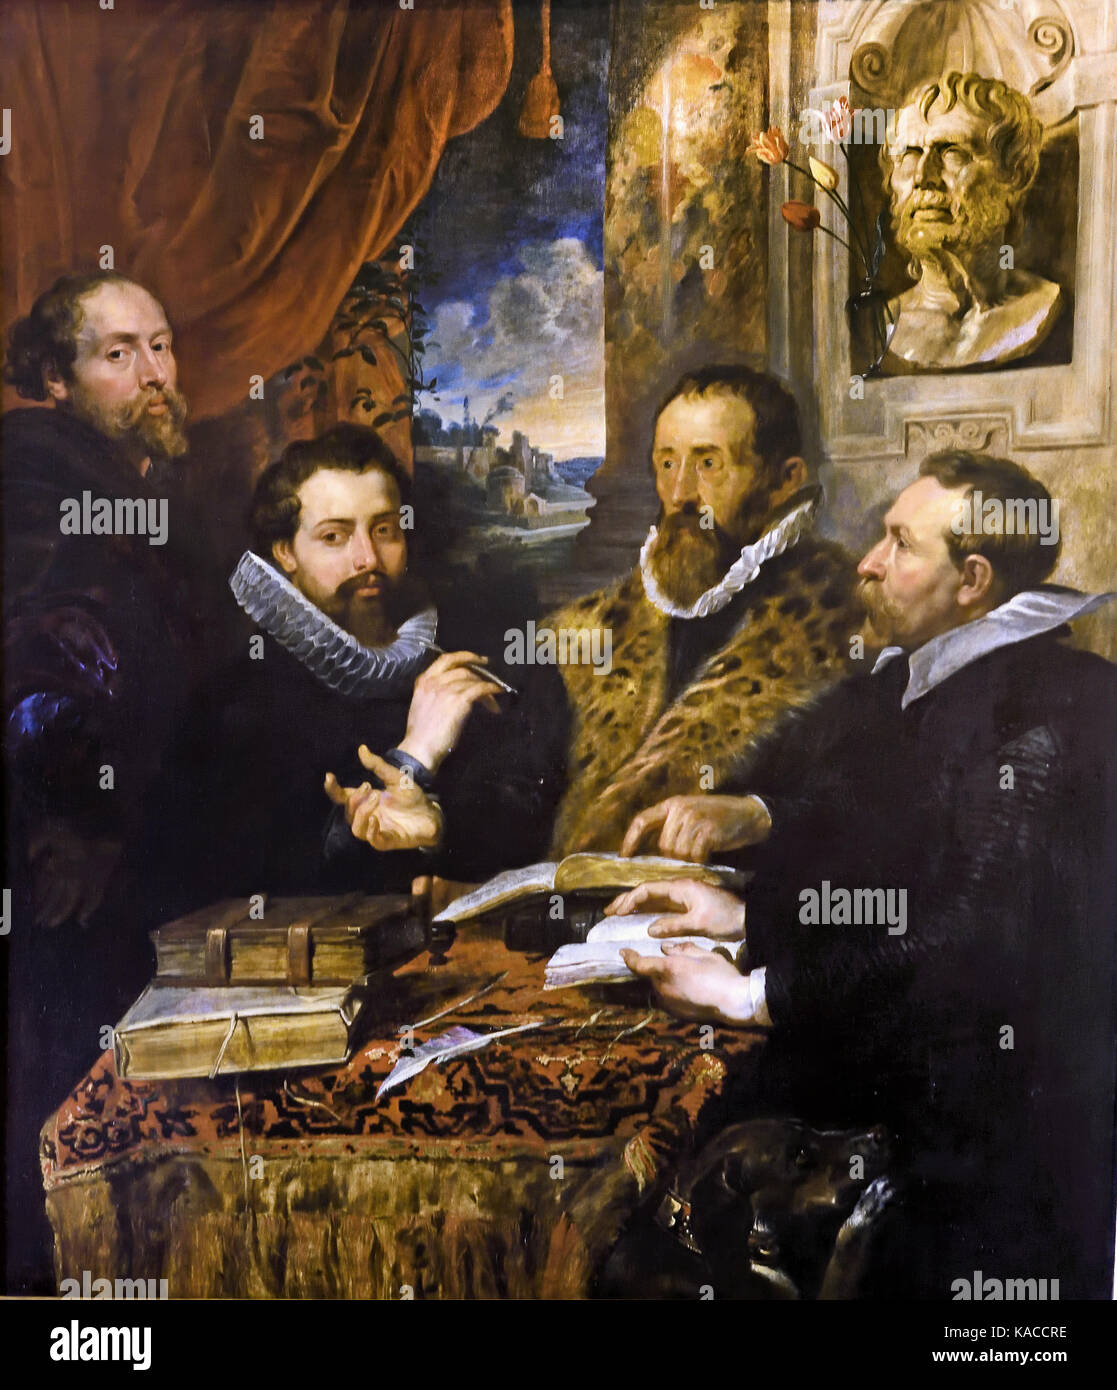 Los cuatro filósofos, de izquierda a derecha: Philippus Rubens (hermano del pintor), Peter Rubens, Justus Lipsius y Jan van der Wouwere por Sir Peter Paul Rubens, 1577 -1640 Bélgica la flamenca Foto de stock